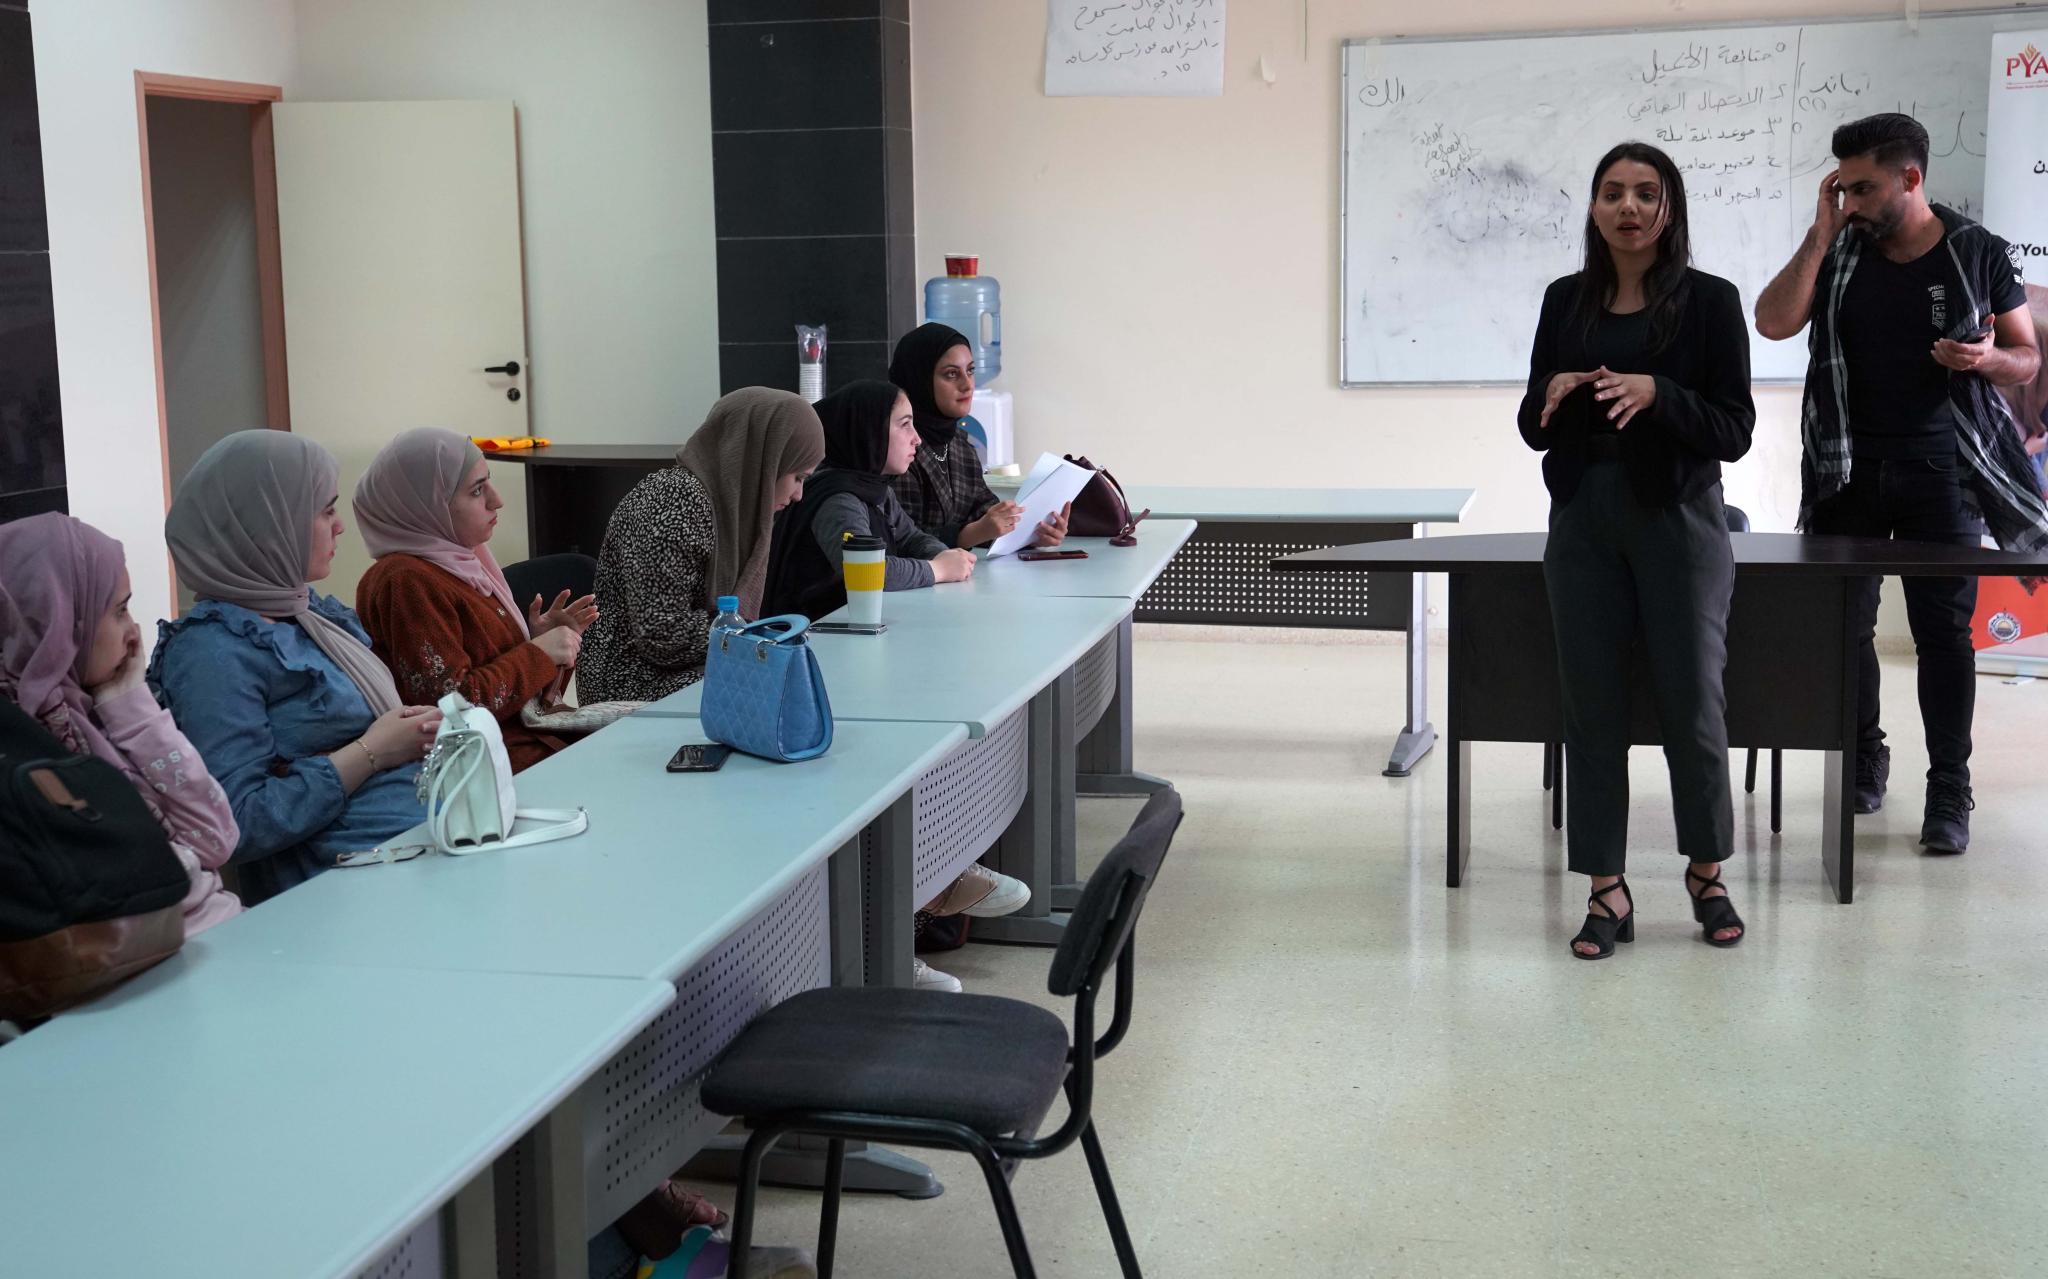 الجامعة و"بيالارا" تعقدان دورة تدريبية بعنوان "الاعلاميون الشباب يدافعون عن حقوقهم" ضمن مشروع تواصل 